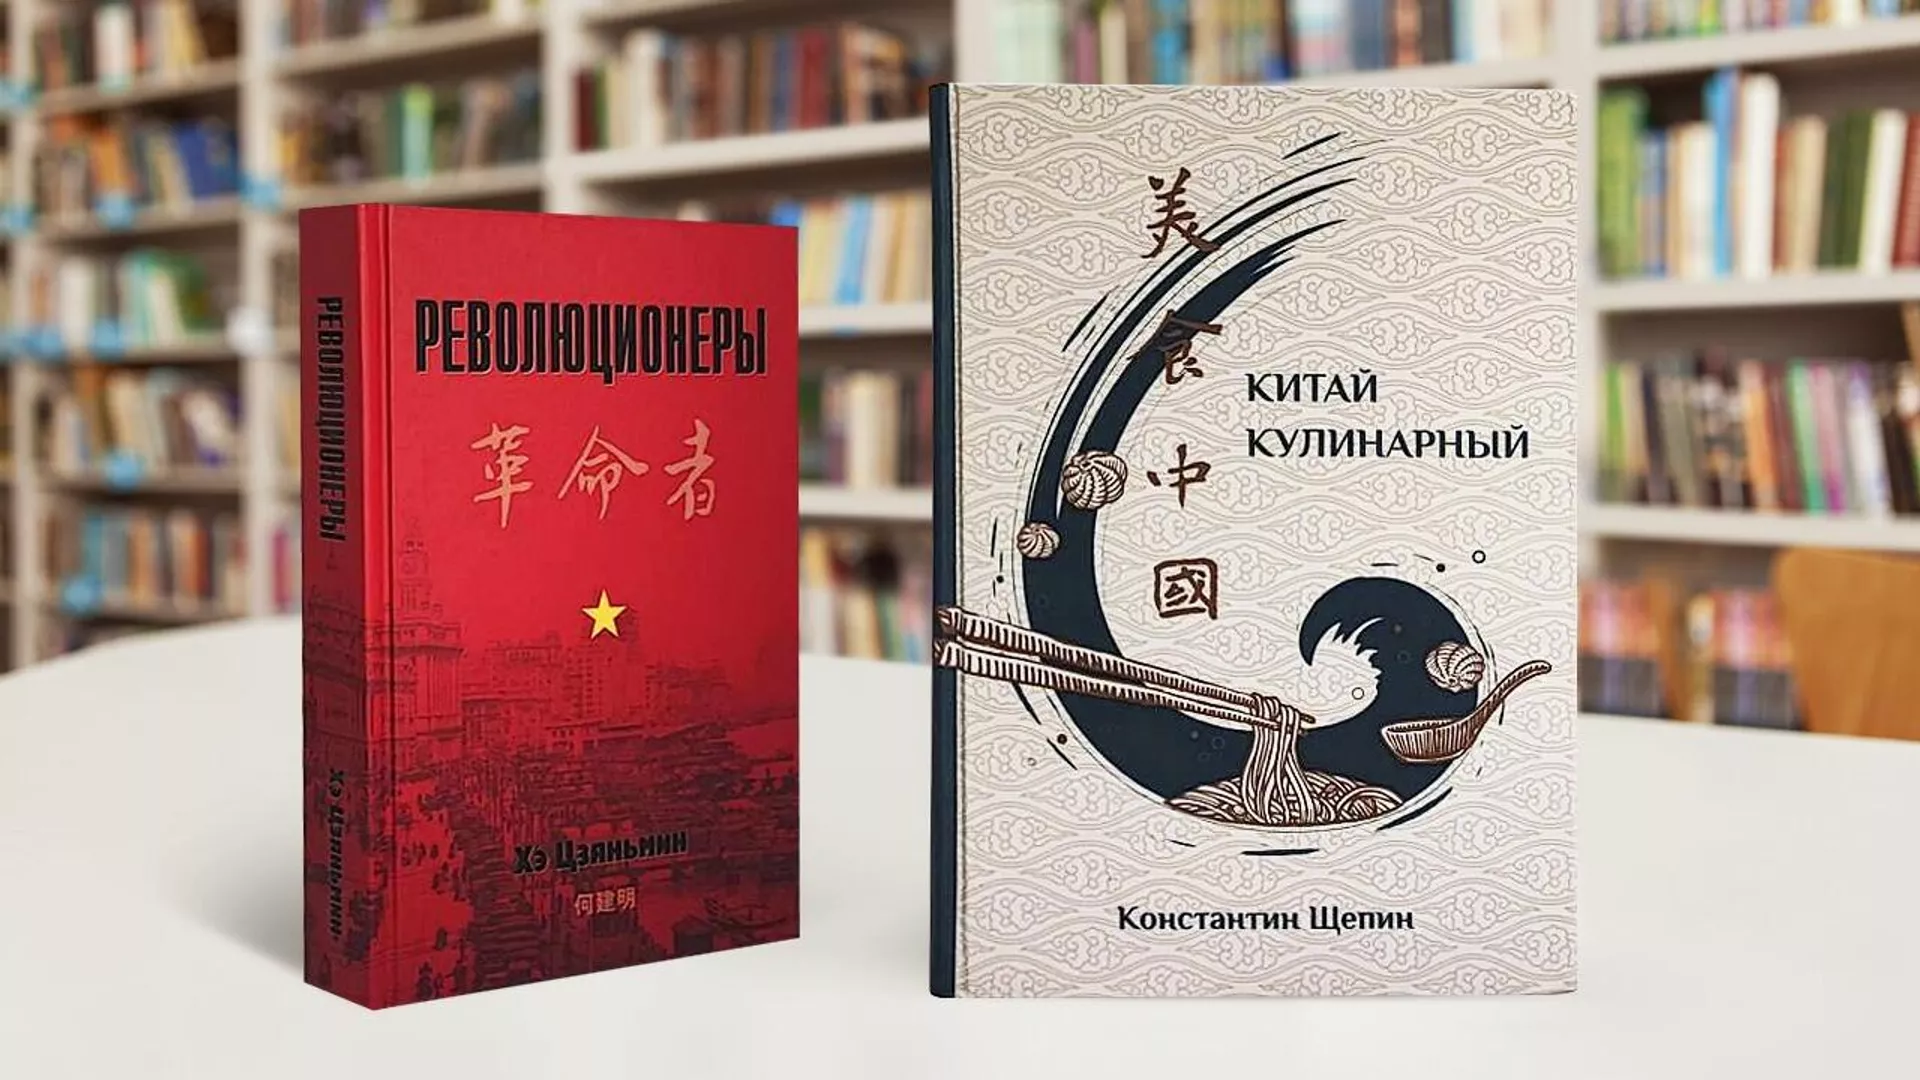 中国作家作品首次获得俄罗斯“年度最佳图书”奖 